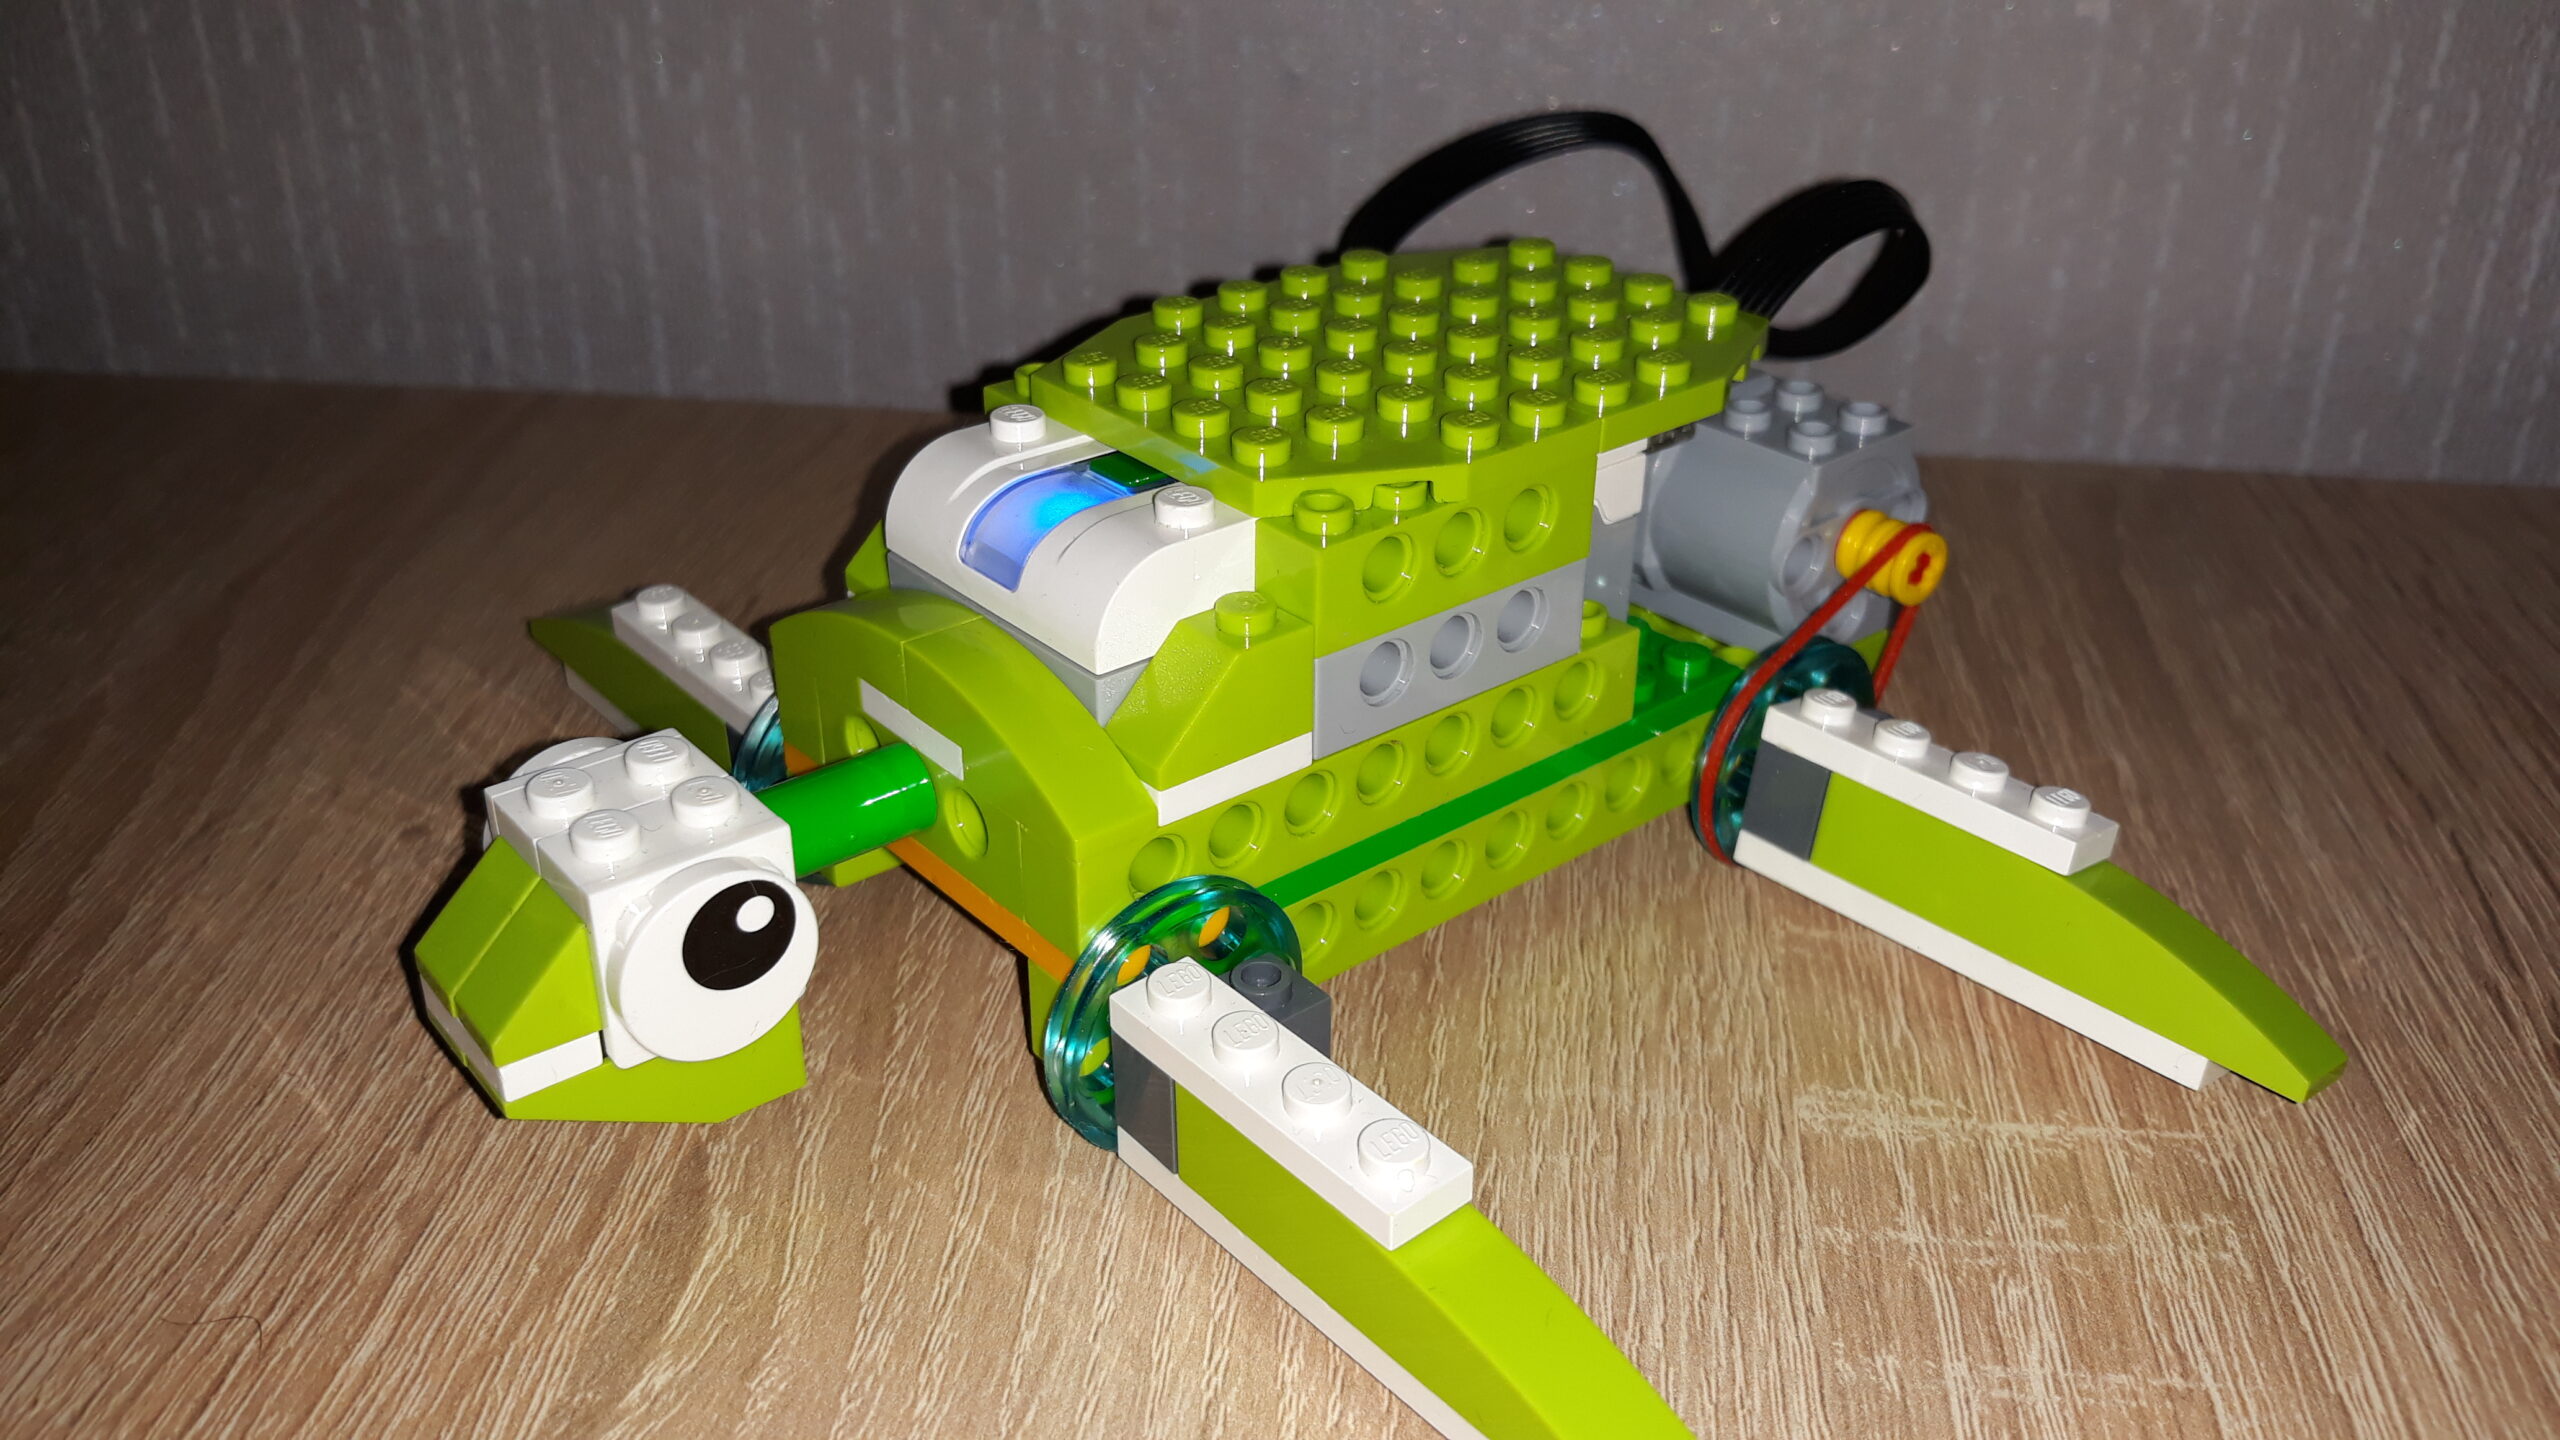 Инструкция по сборке из набора LEGO Education WeDo 2.0 Черепашка